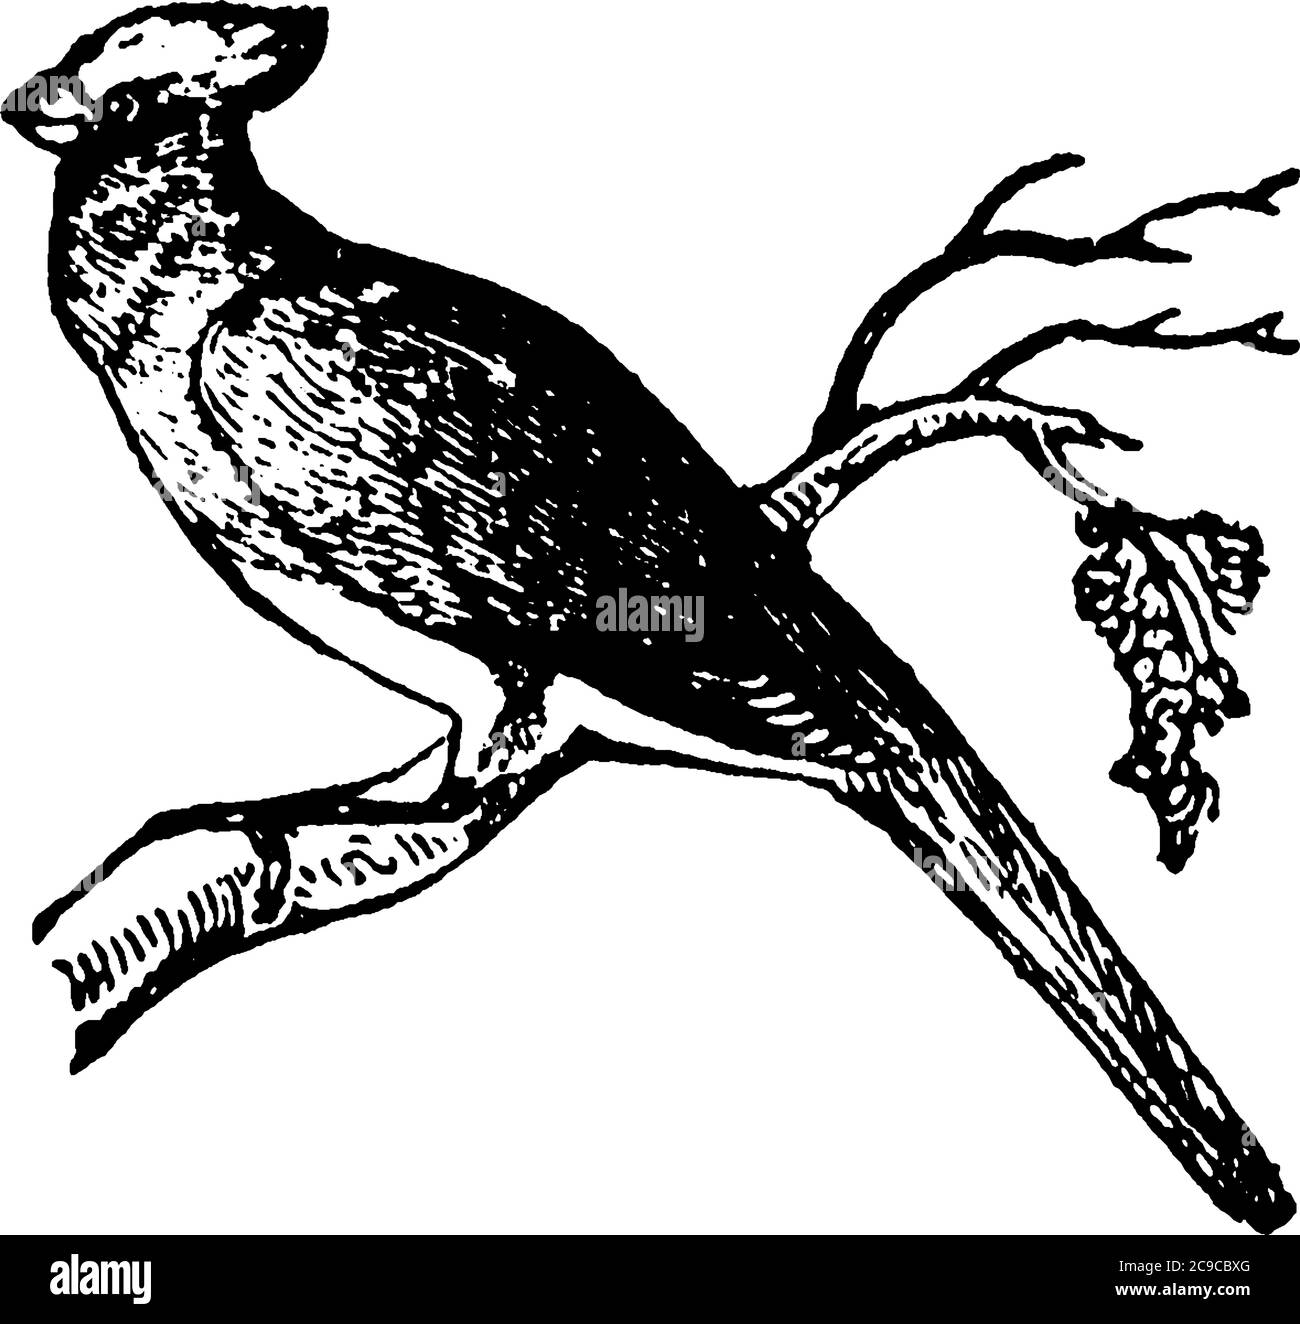 Nightingale, ein Vogel berühmt wegen seiner brillanten Lied, das für Qualität und Vielfalt nicht von der eines anderen Vogels übertroffen wird, Vintage-Linie dra Stock Vektor